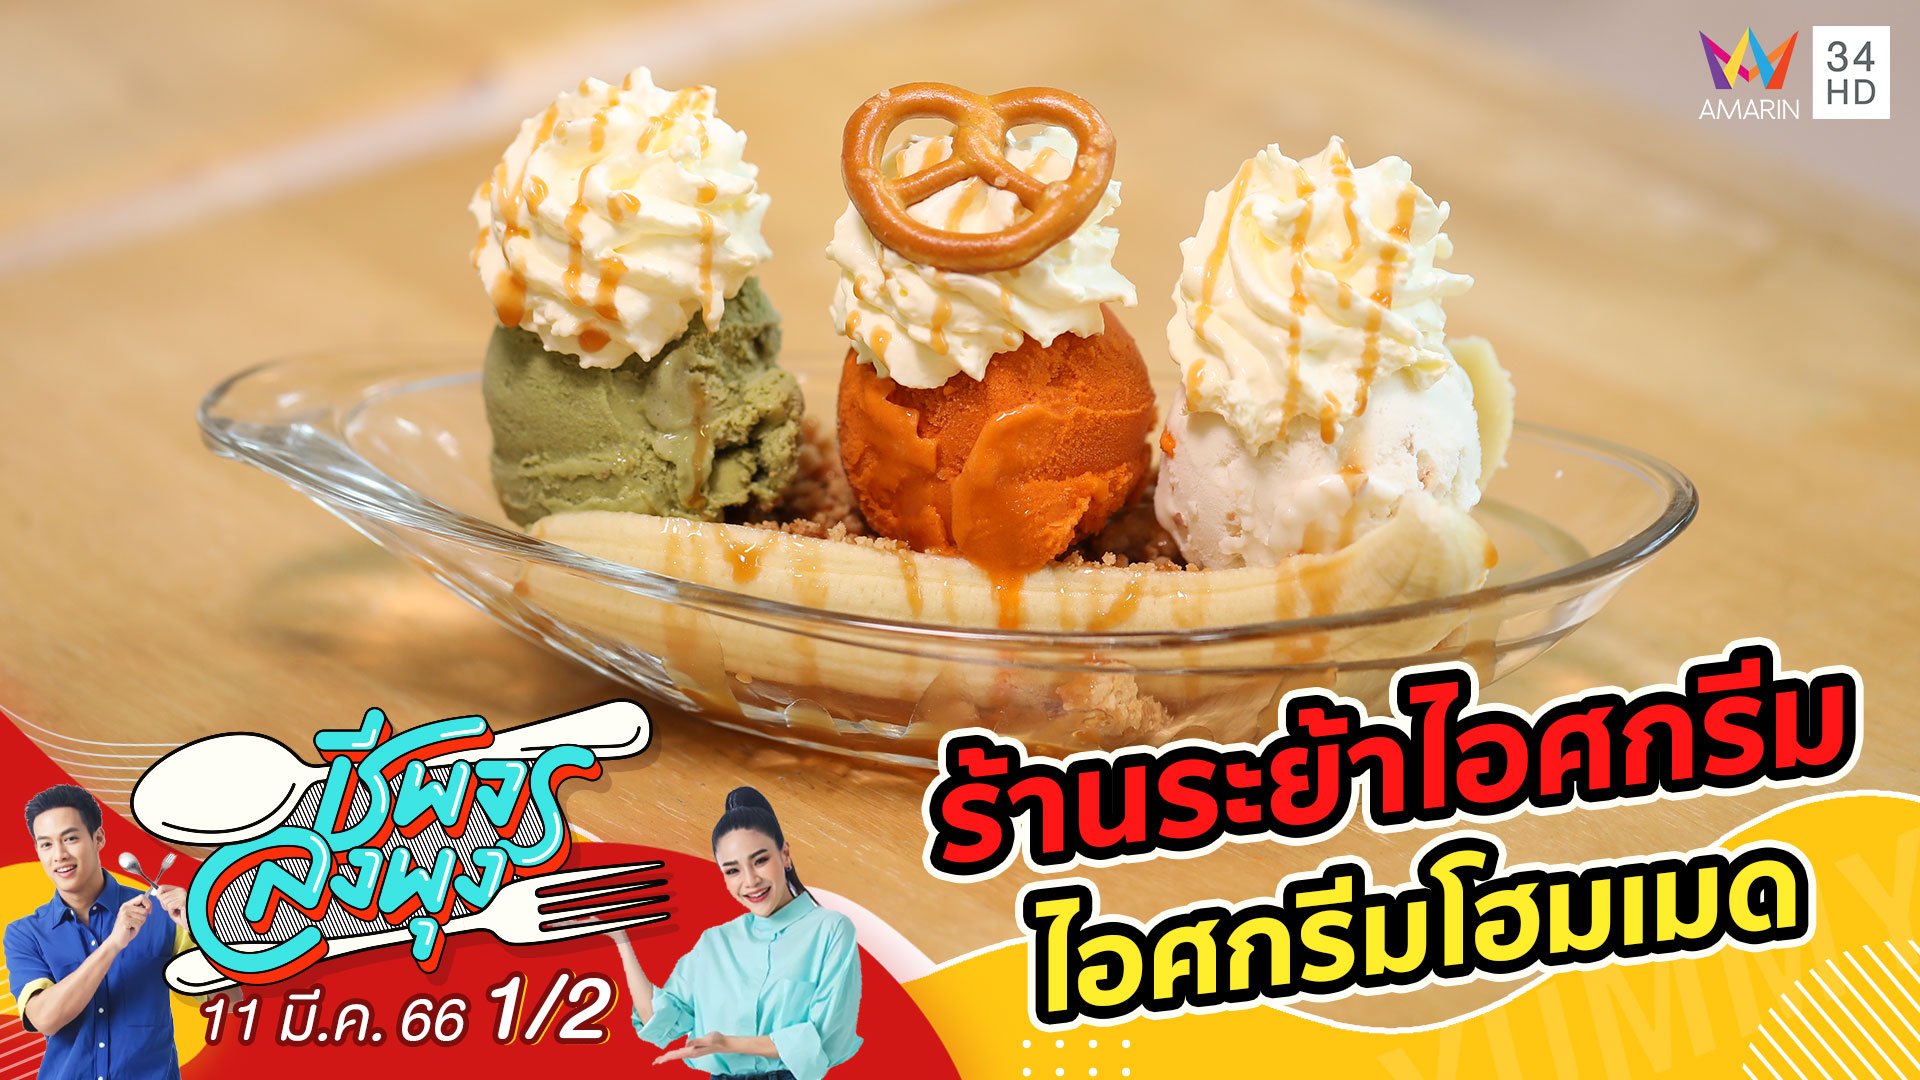 ไอศกรีมโฮมเมดแสนอร่อย @ ร้านระย้าไอศกรีม | ชีพจรลงพุง | 11 มี.ค. 66 (1/2) | AMARIN TVHD34